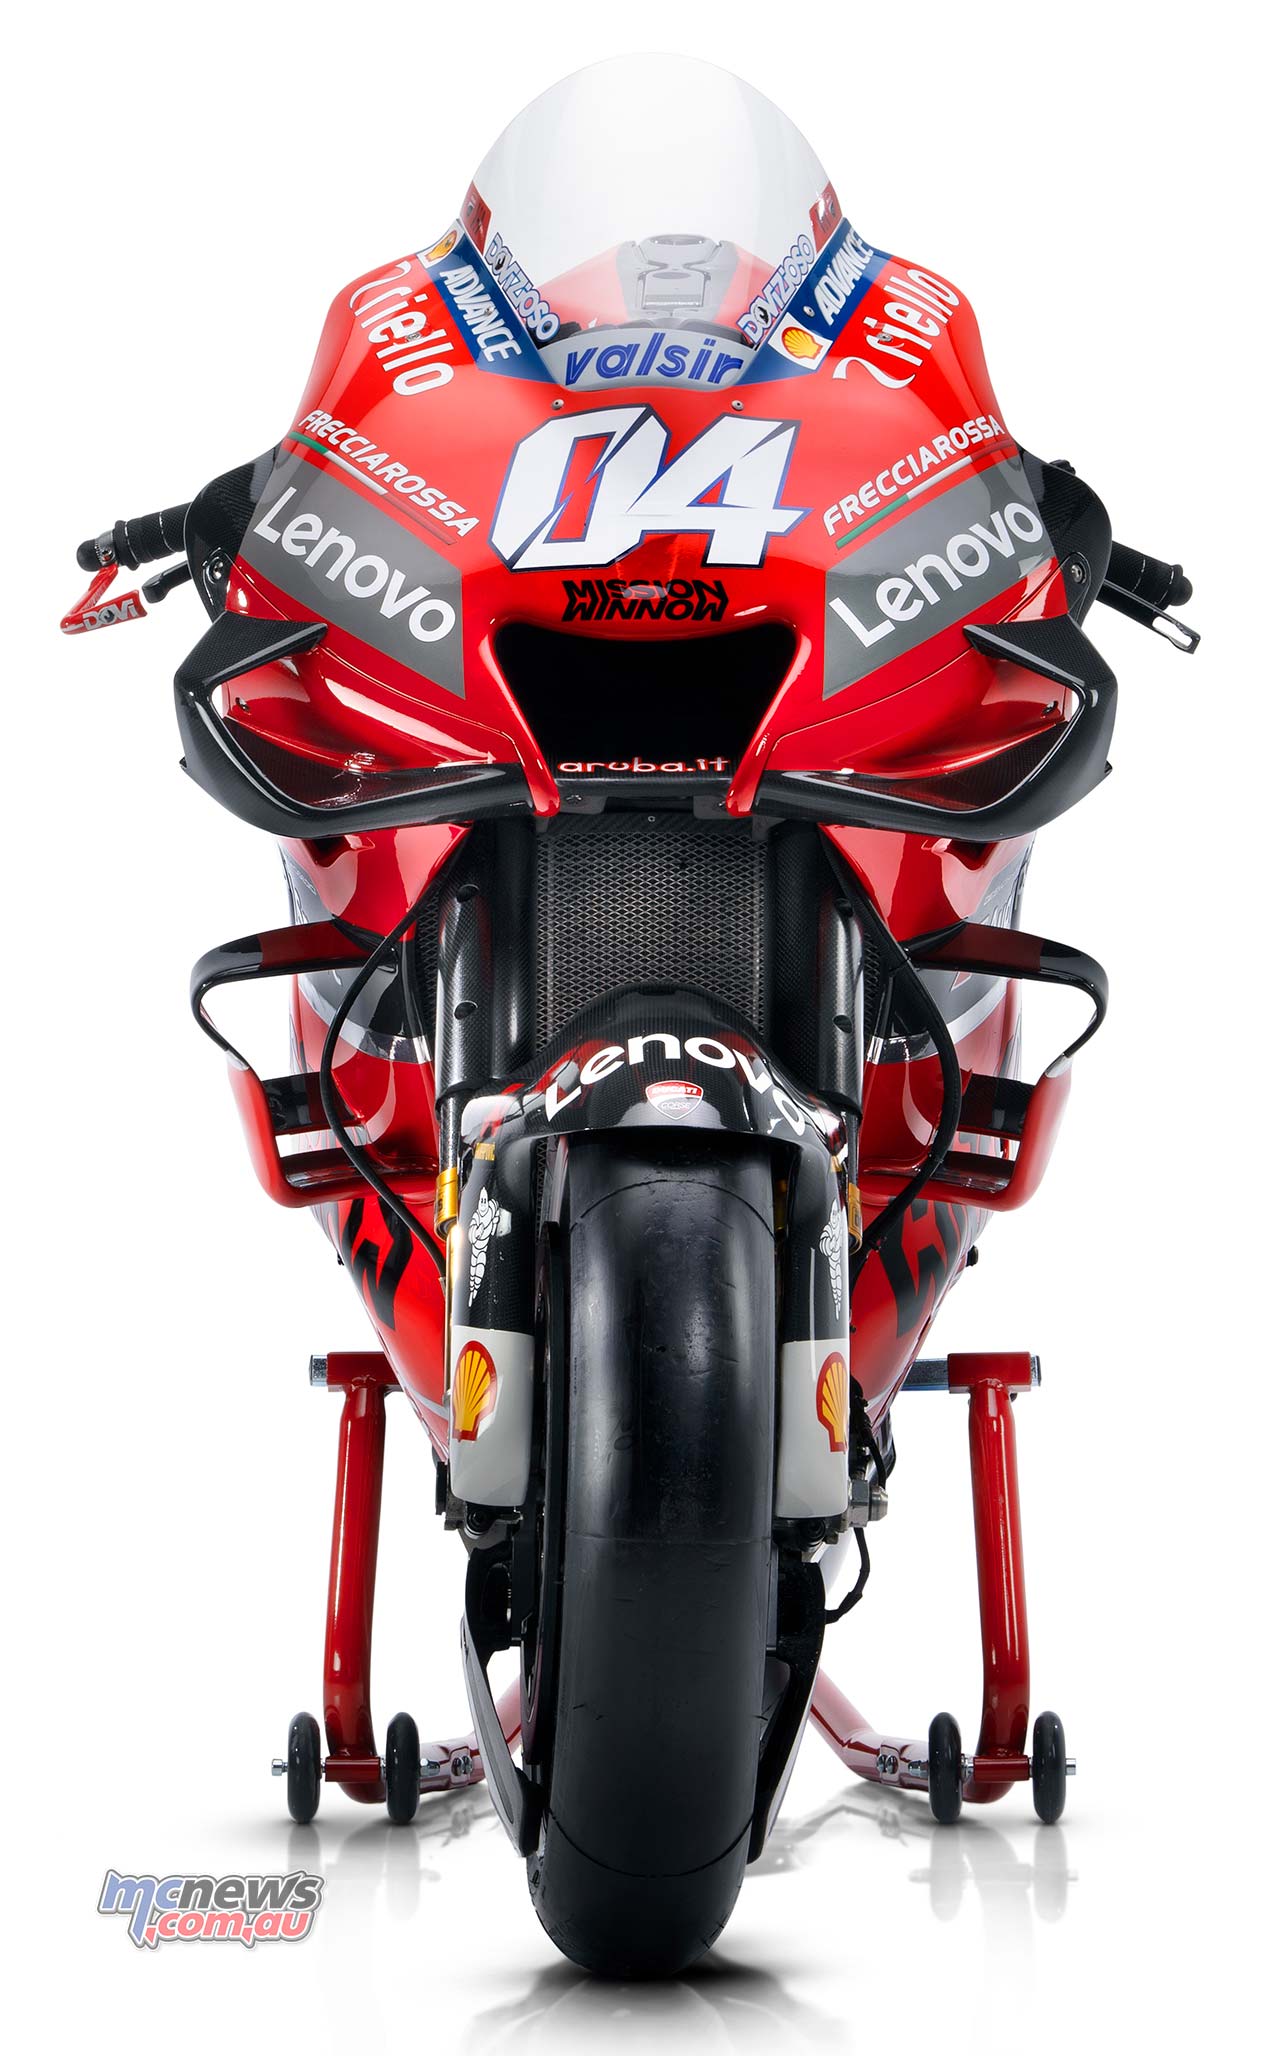 Ducati MotoGP Wallpaper Free Ducati MotoGP Background